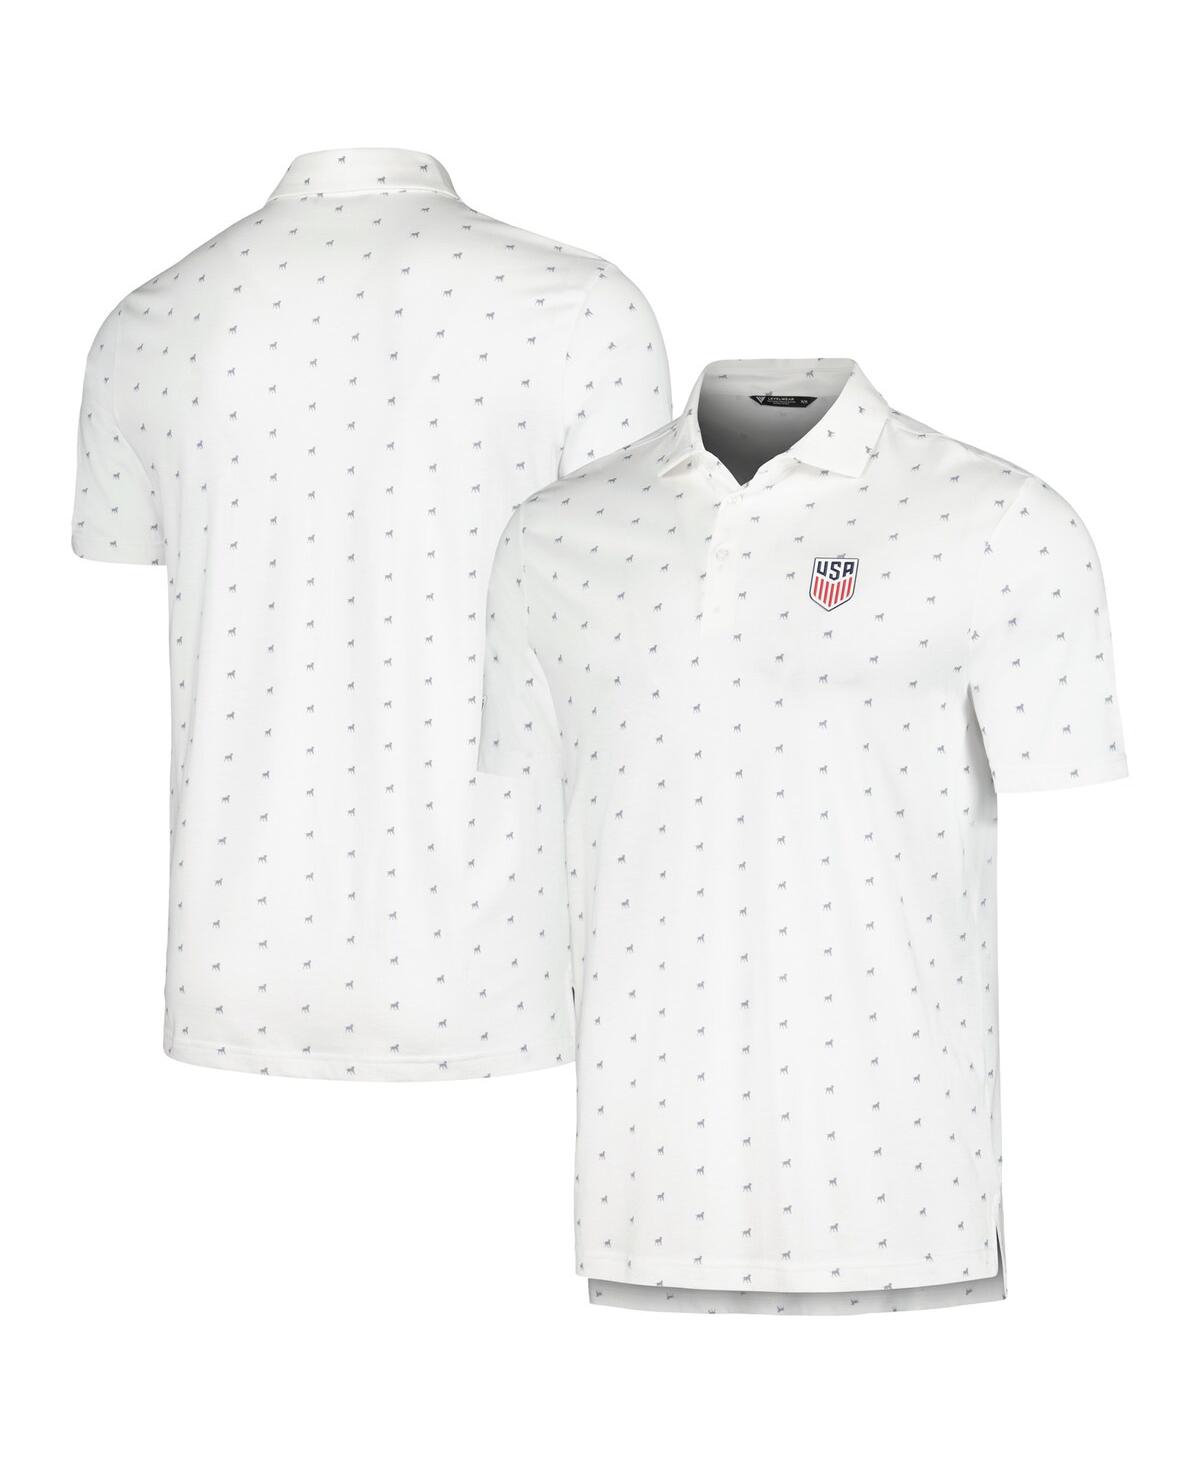 Men's LevelWear White Usmnt Rover Polo Shirt - White